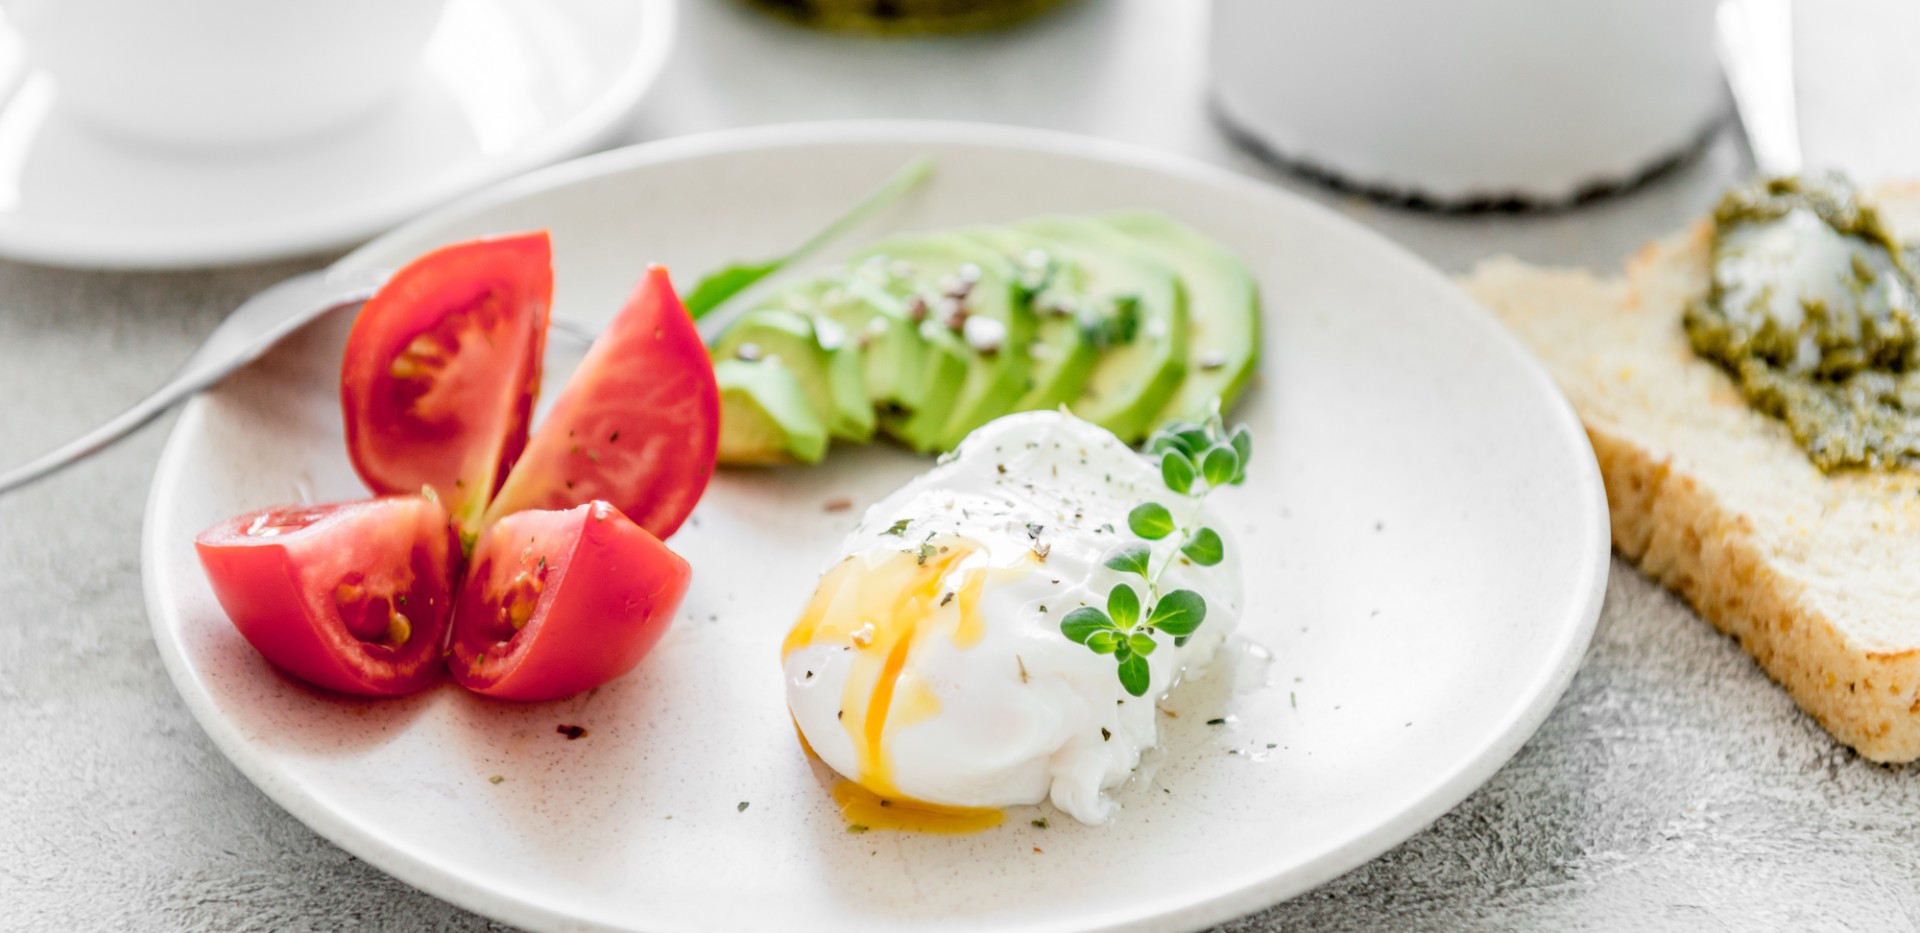 Nincs reggeli diéta terv - Mit ehetsz reggelire a keto diétában? - ads13.fr